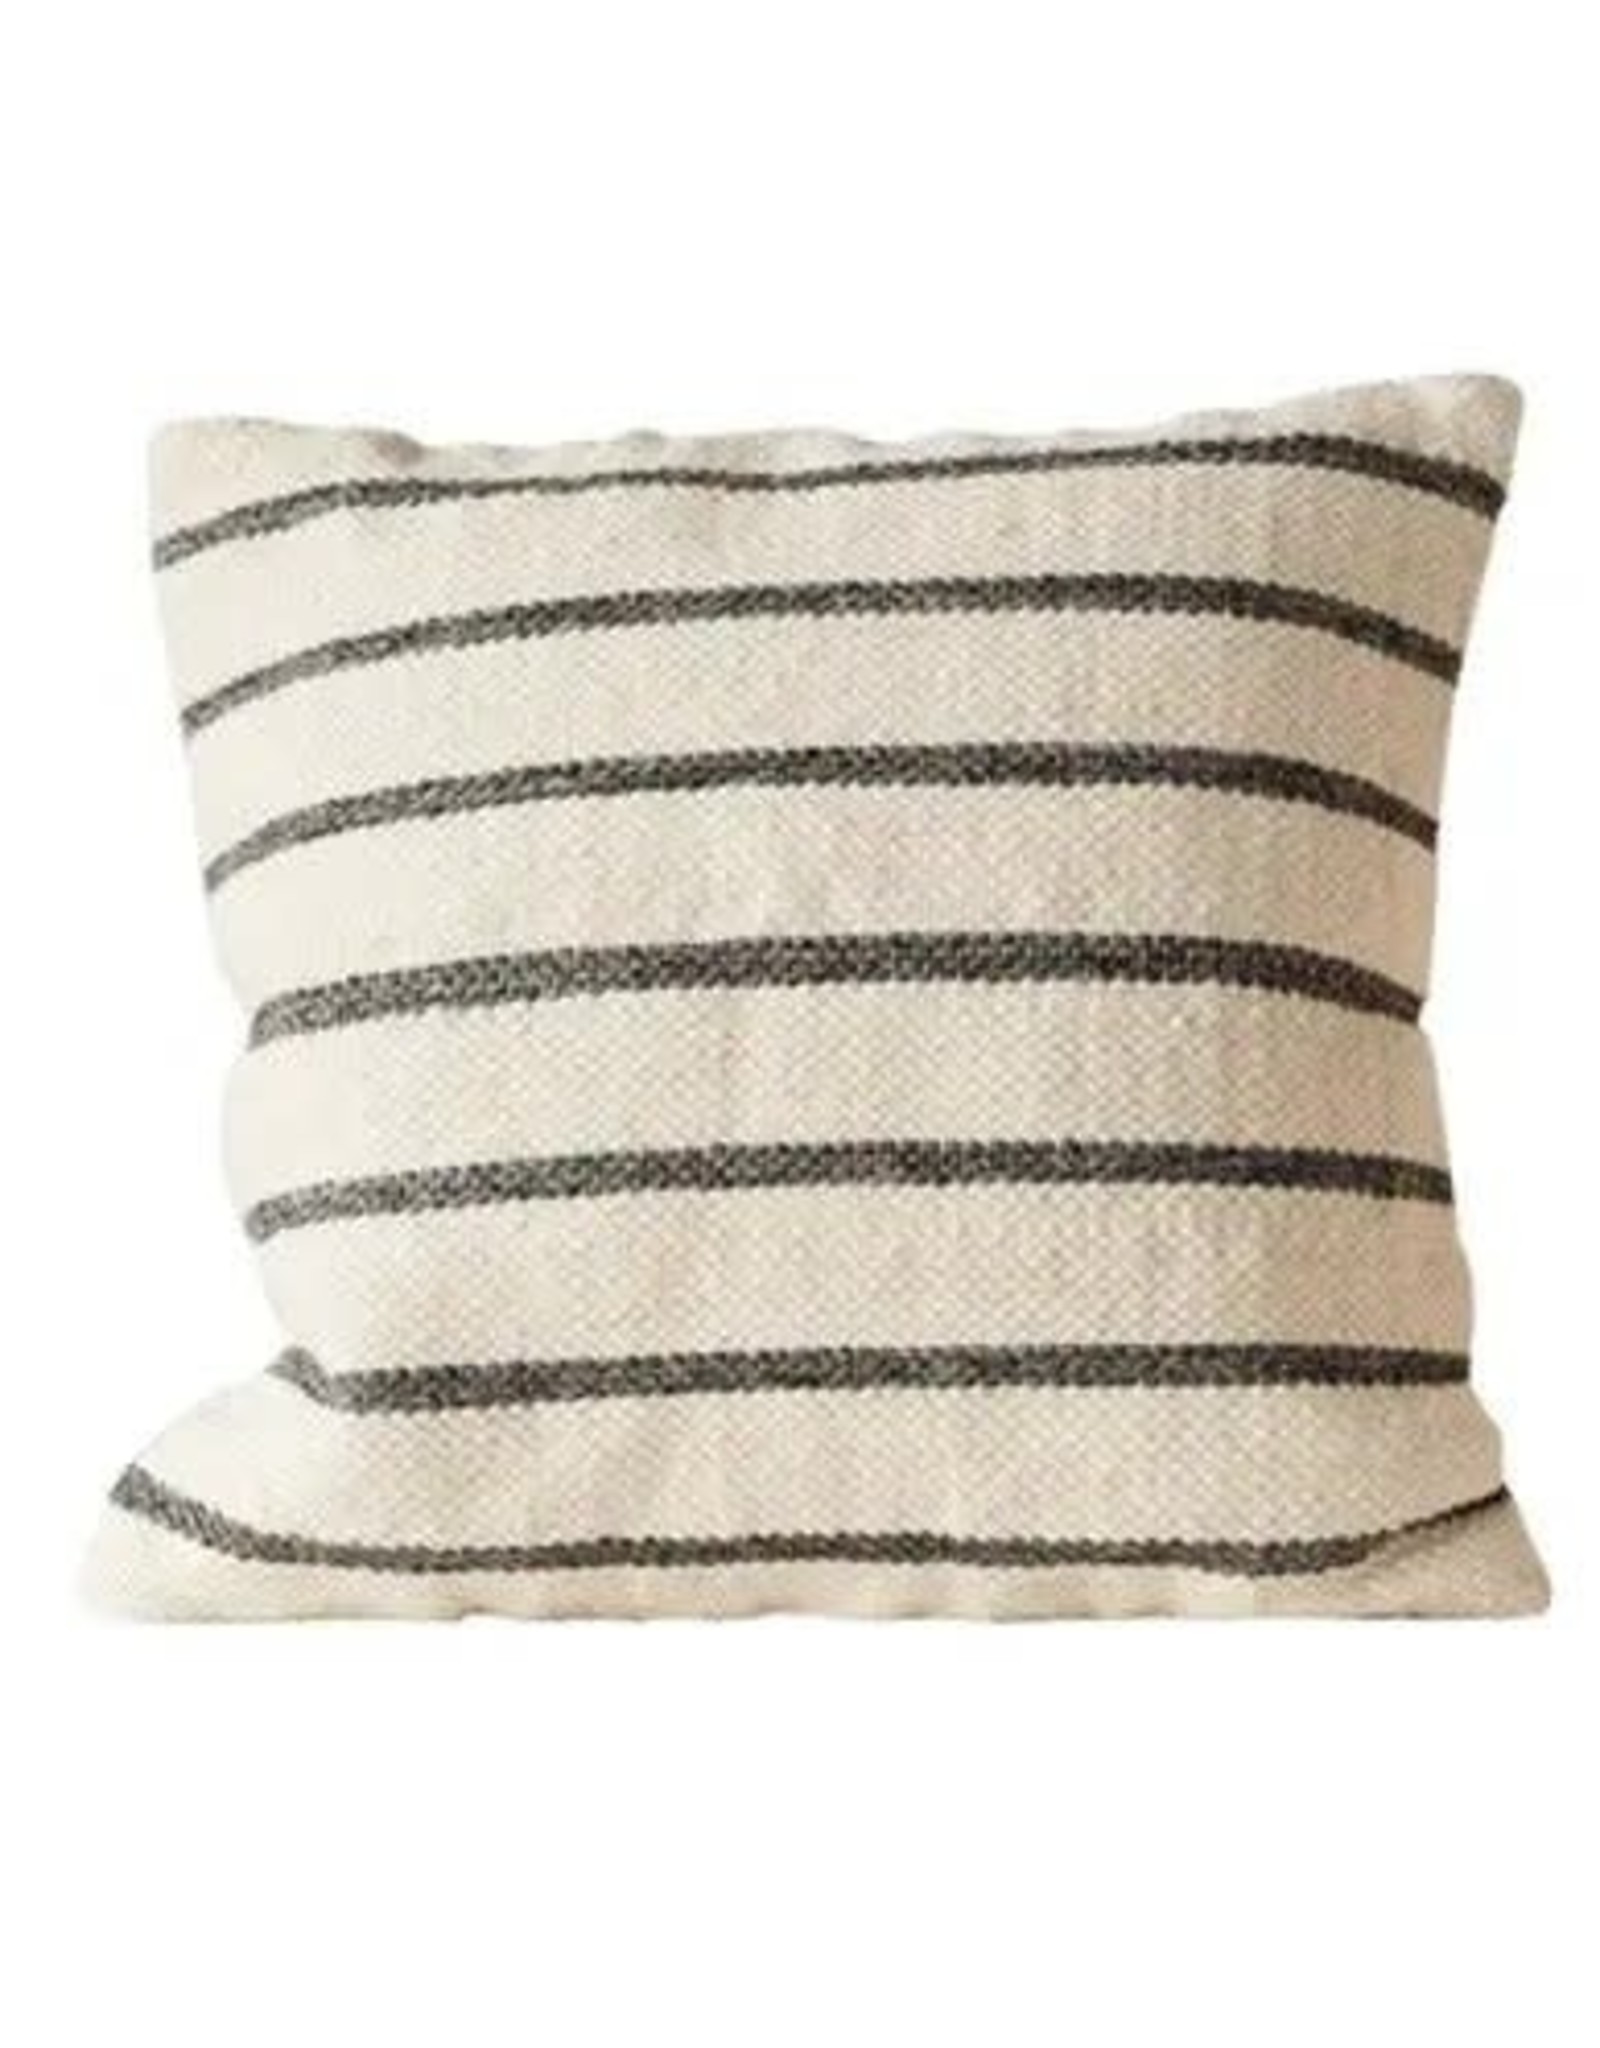 Striped Pillow Black